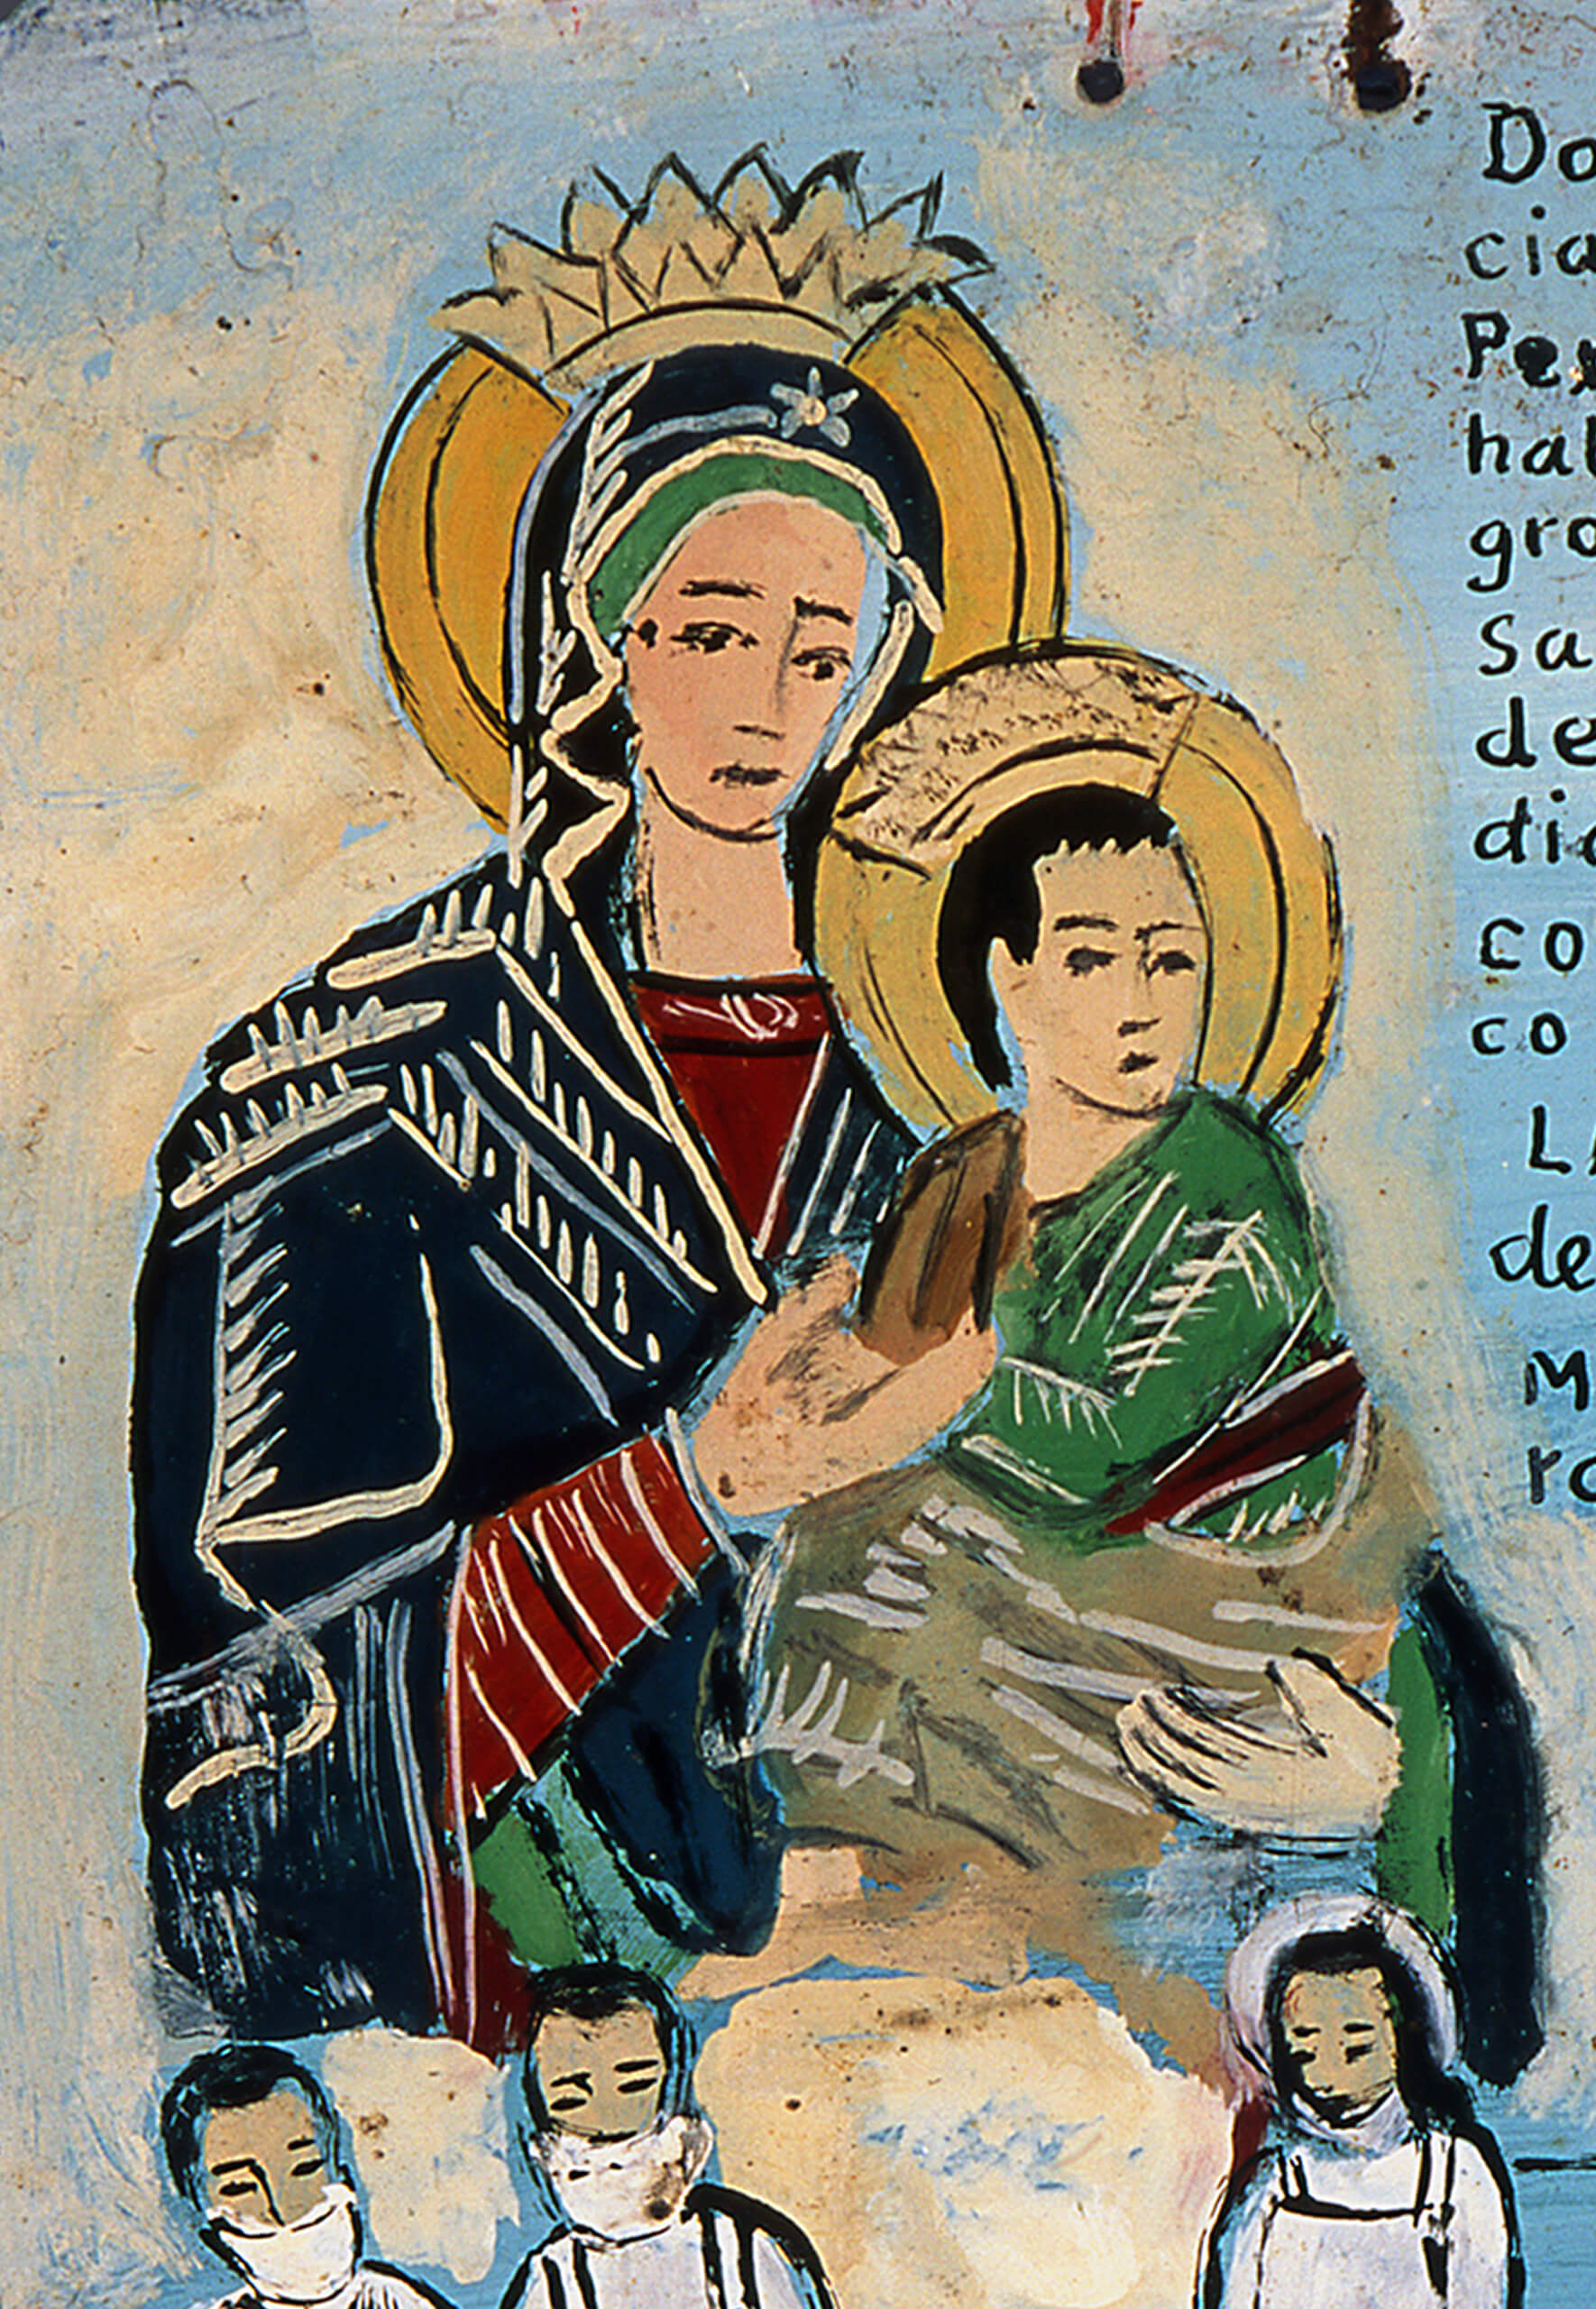 Retablo a la Virgen del Perpetuo Socorro | Salas de Arte Virreinal y Siglo XIX | Museo Amparo, Puebla